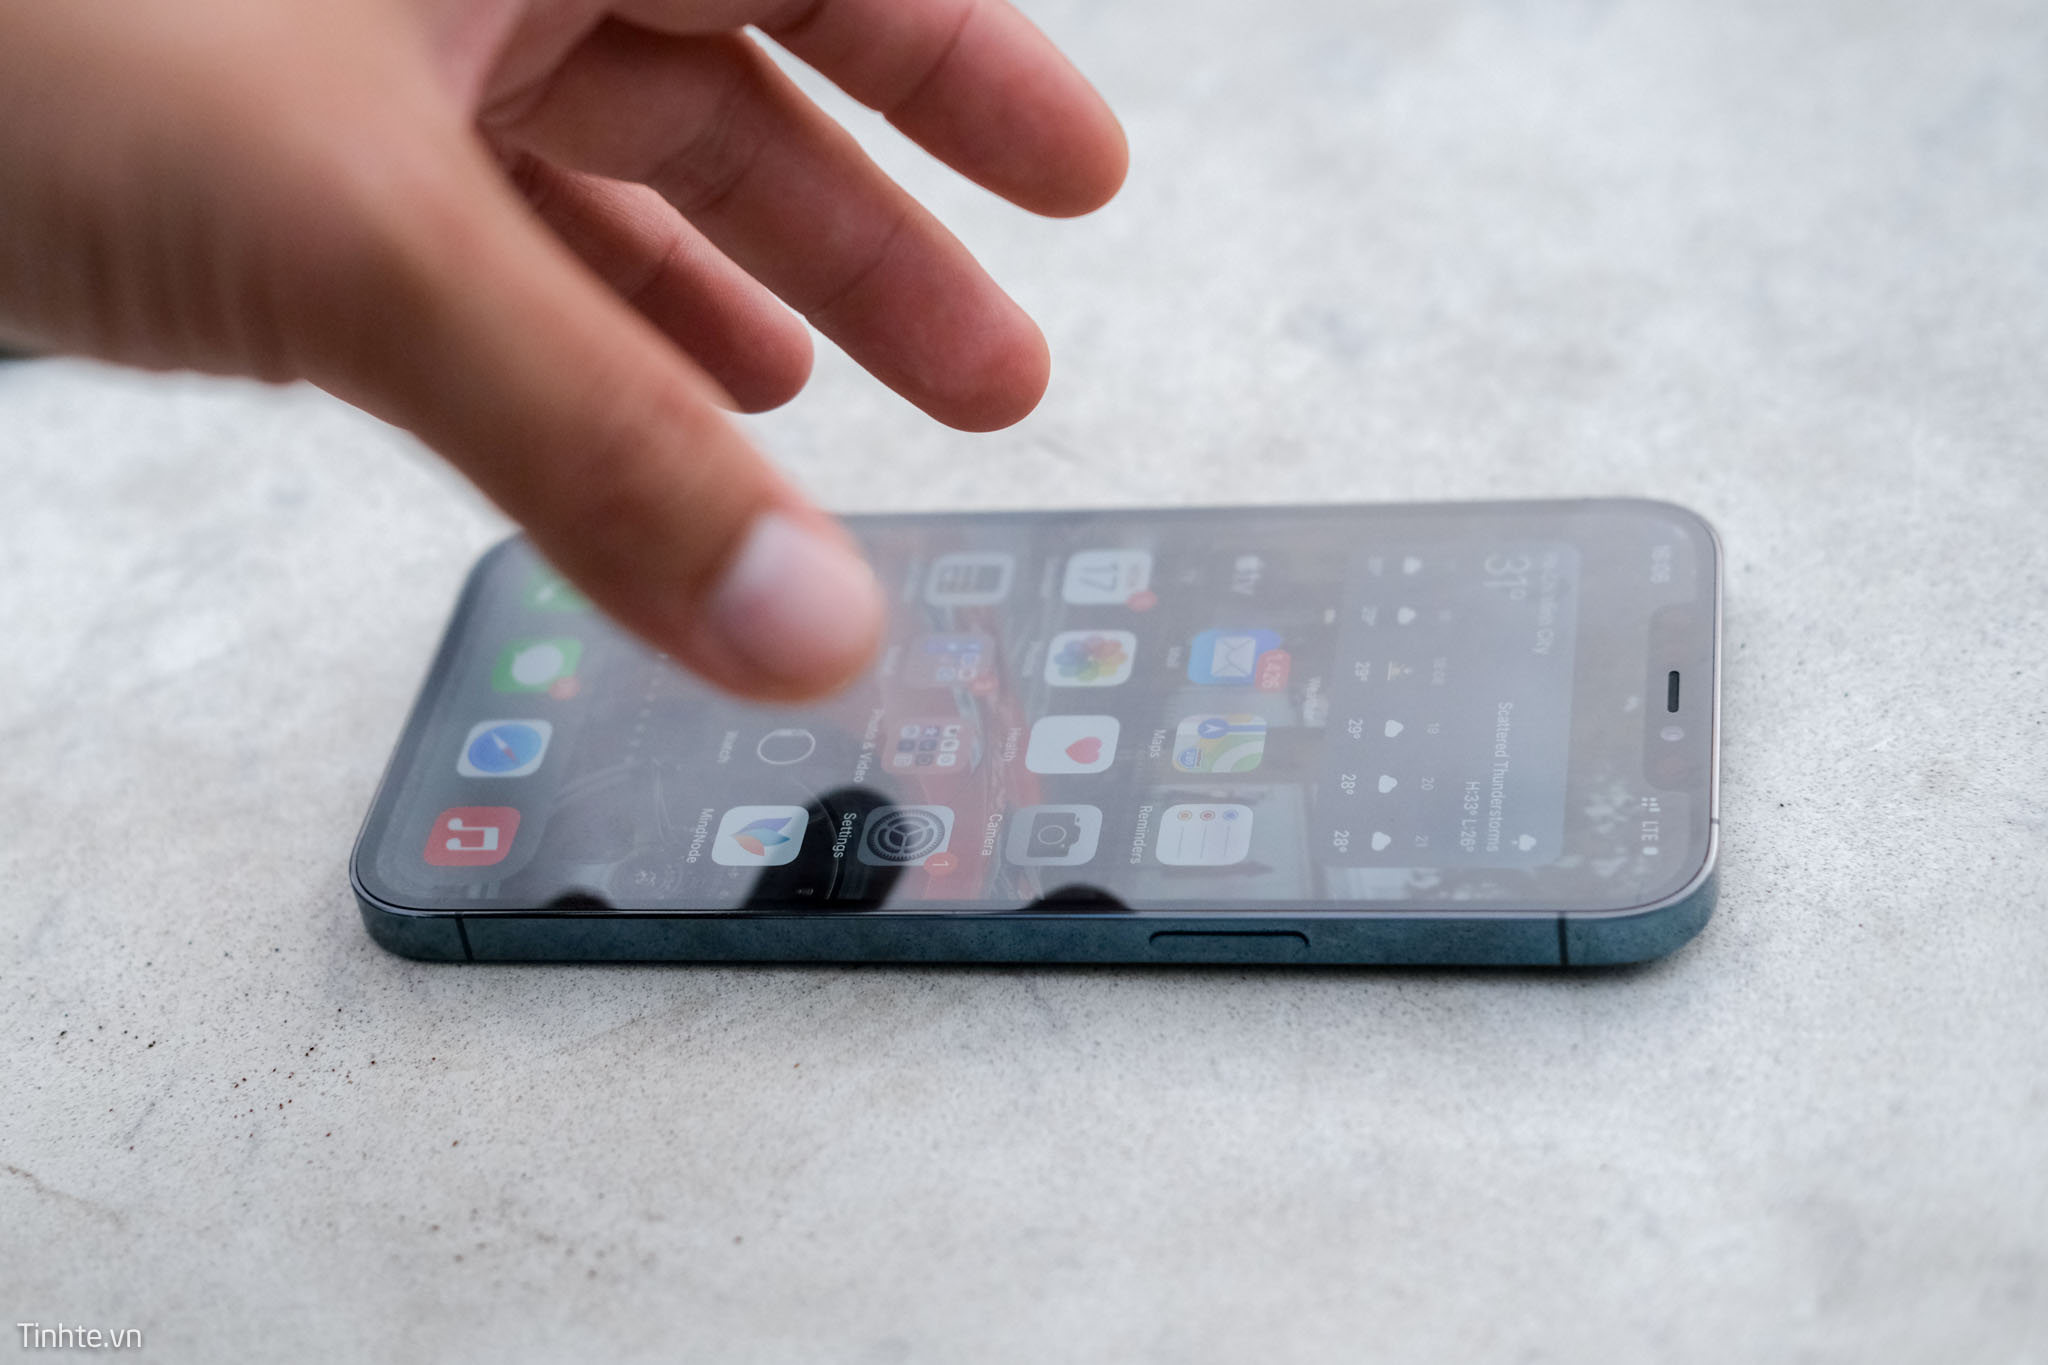 Apple iPhone 12 Pro Max sau nửa năm: đôi khi "hết cỡ" chưa phải là tốt nhất